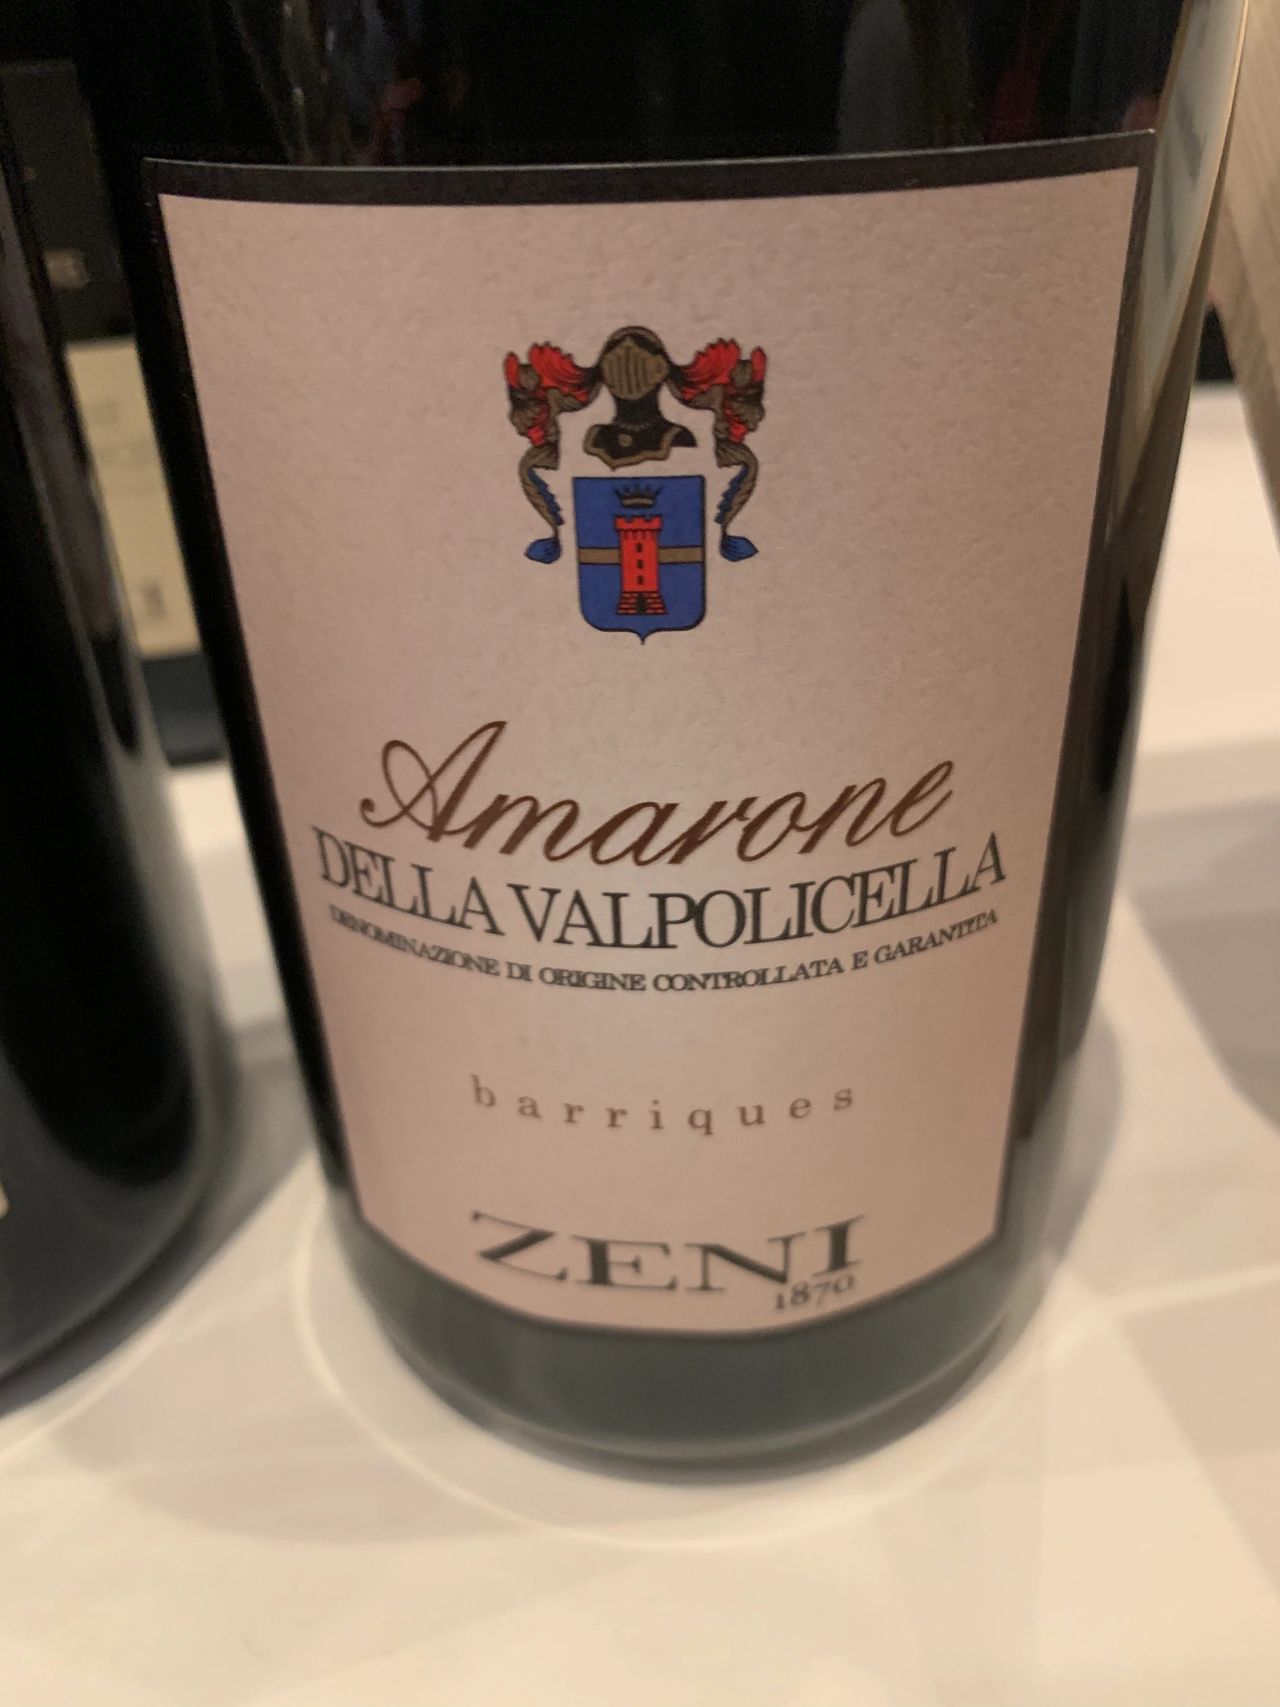 Amarone della Valpolicella docg Classico - Zeni Vino Shop